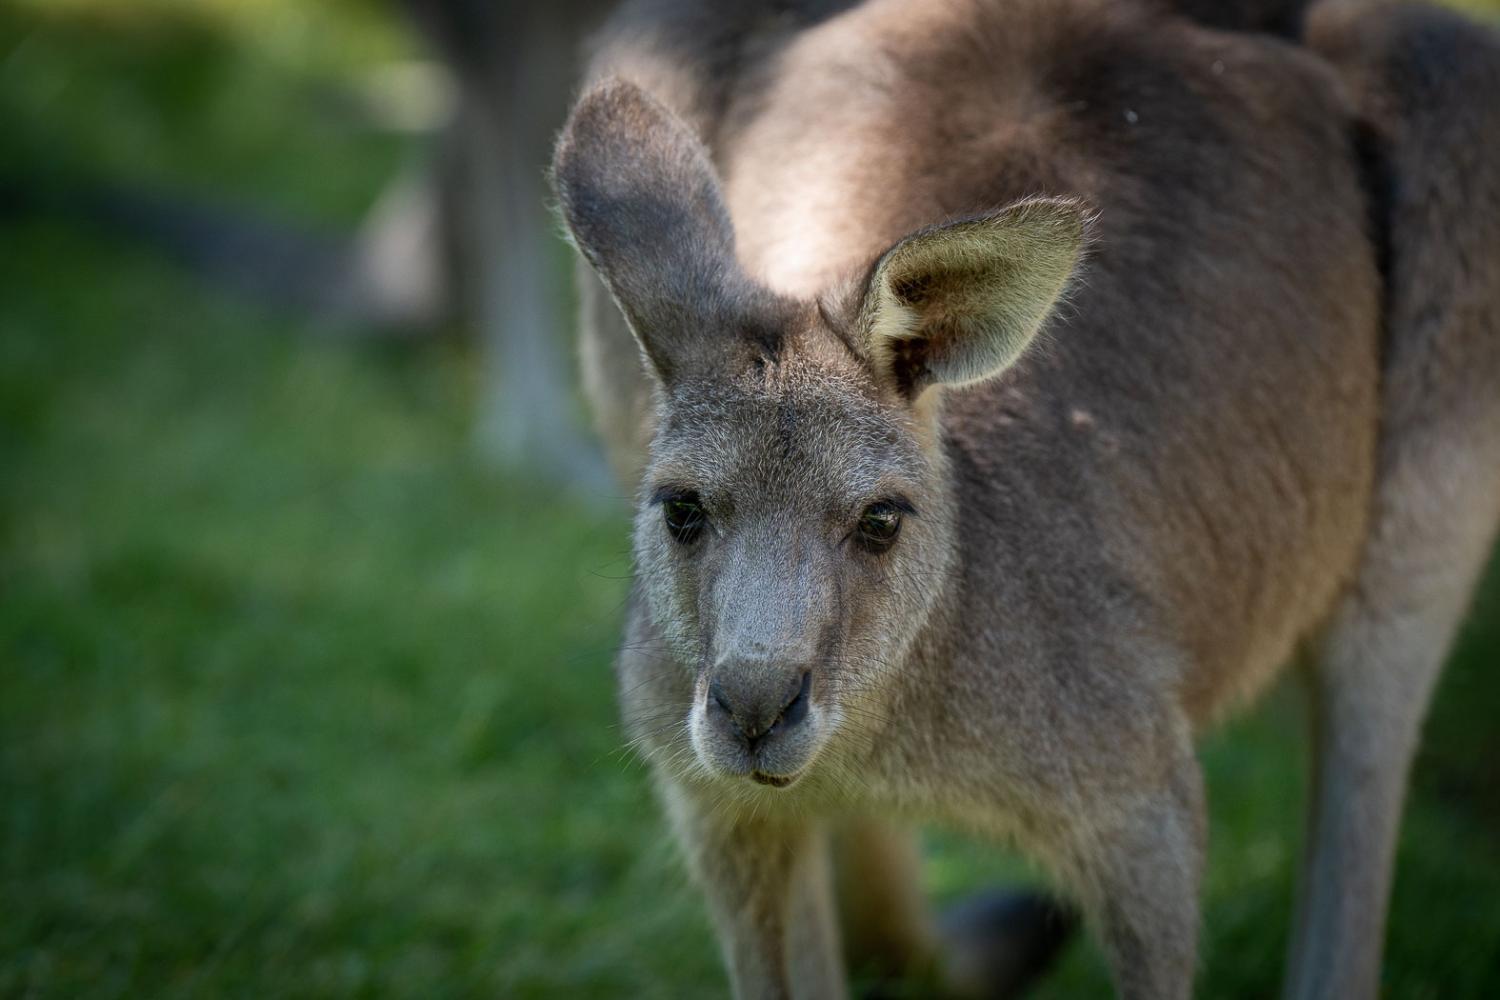 Kangaroo on grass